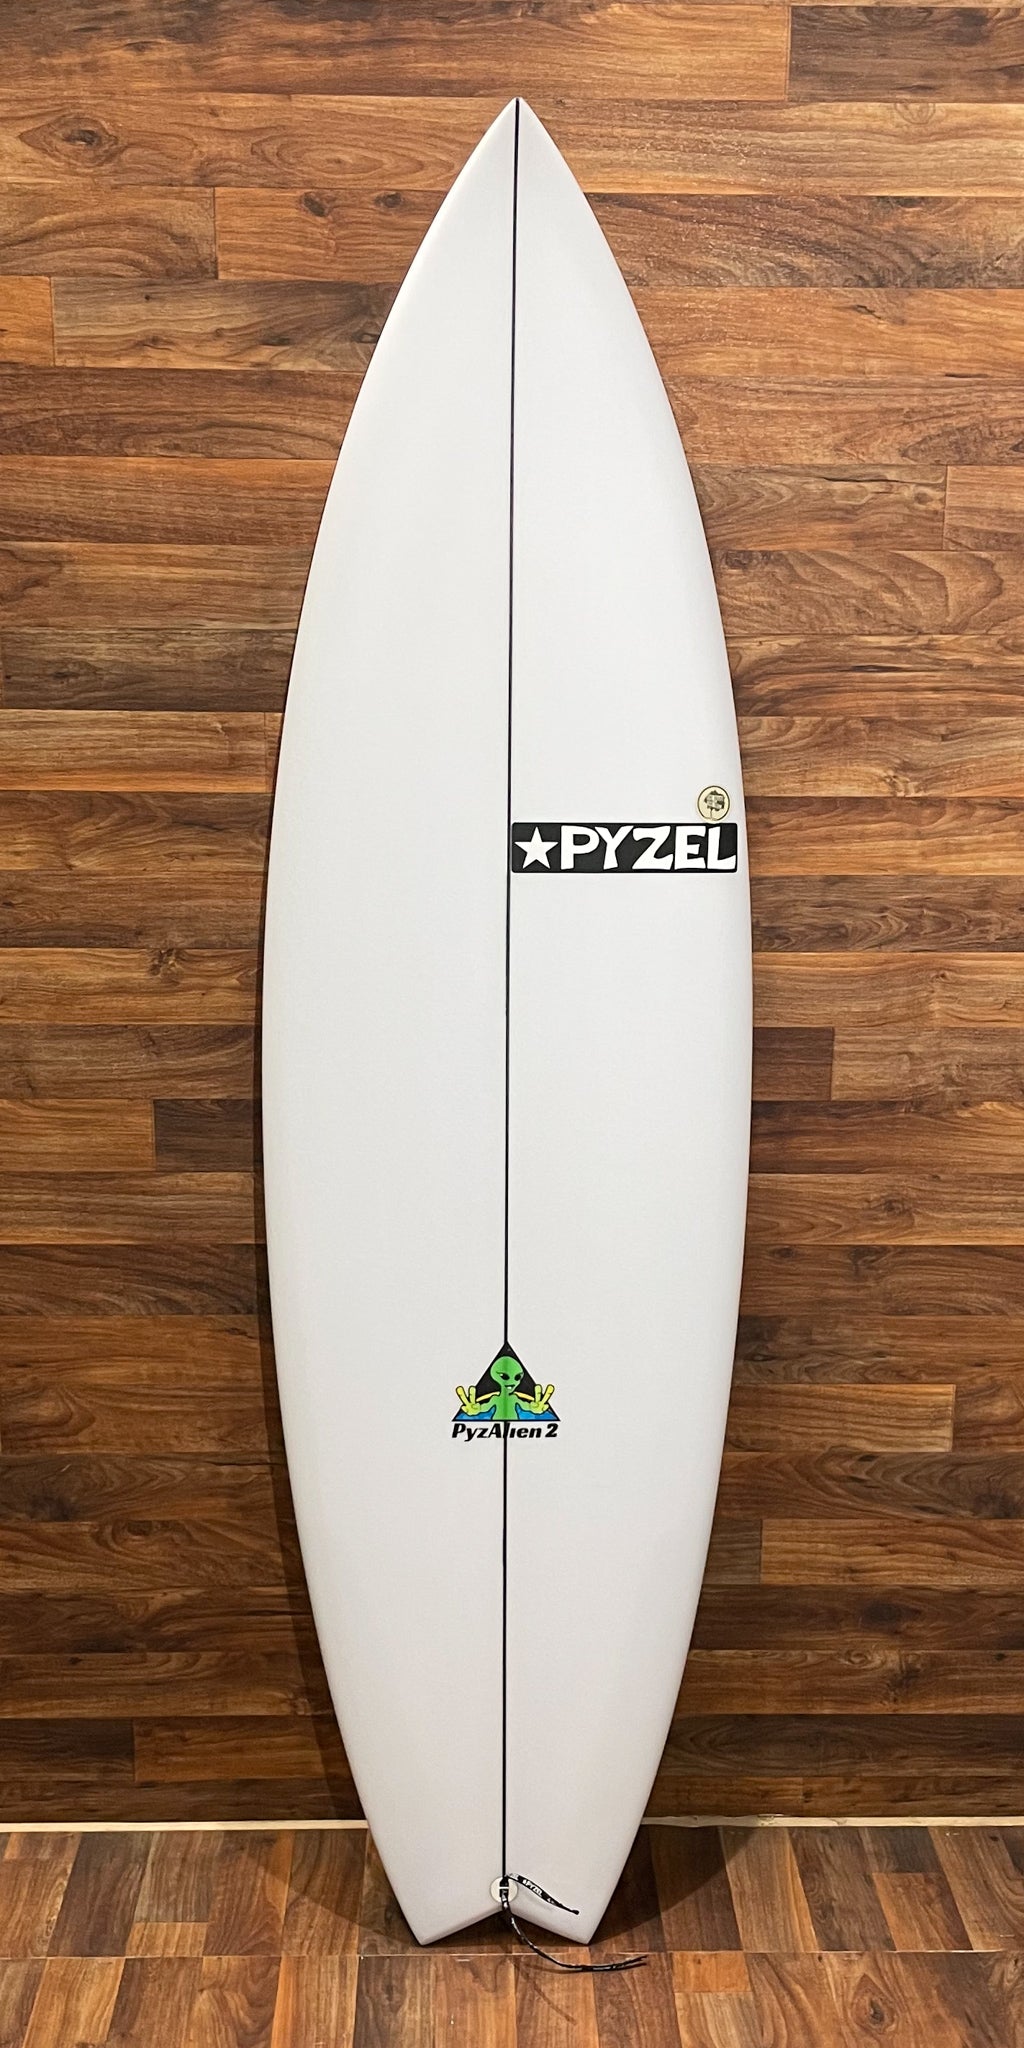 PYZEL PYZALIEN TWO 5'9" SURFBOARD